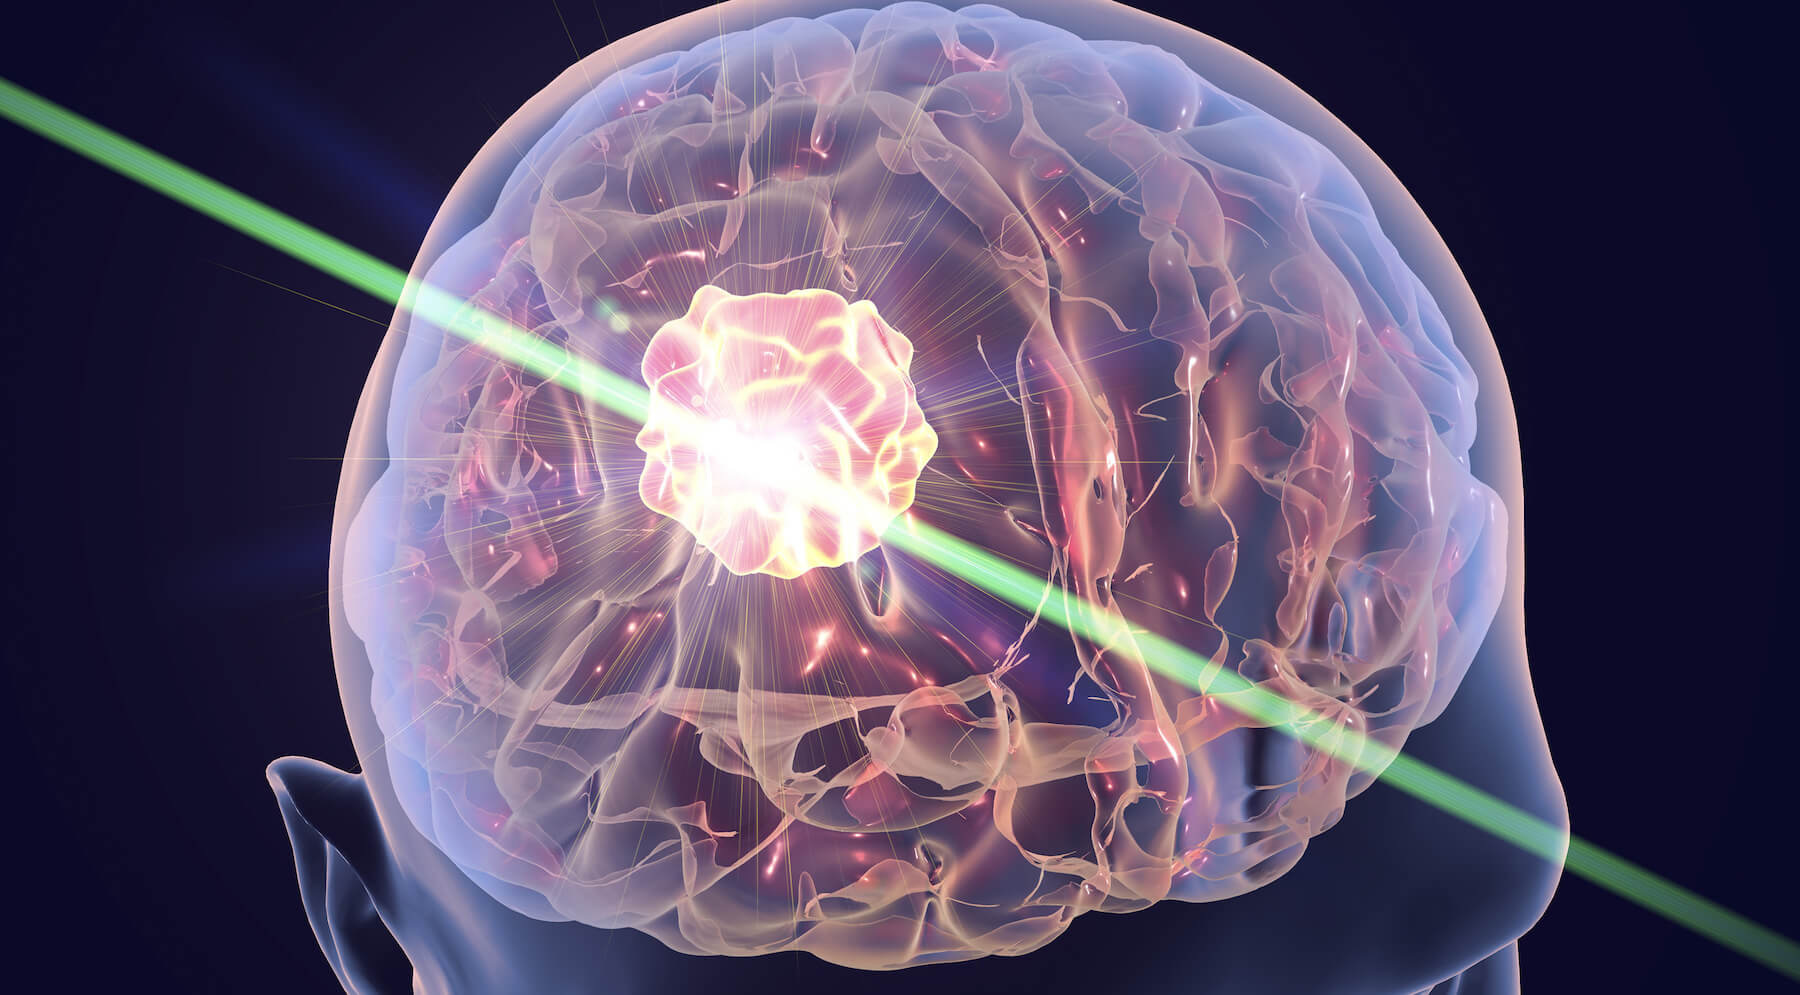 Læger tilbud til behandling af Alzheimers sygdom ved hjælp af laser